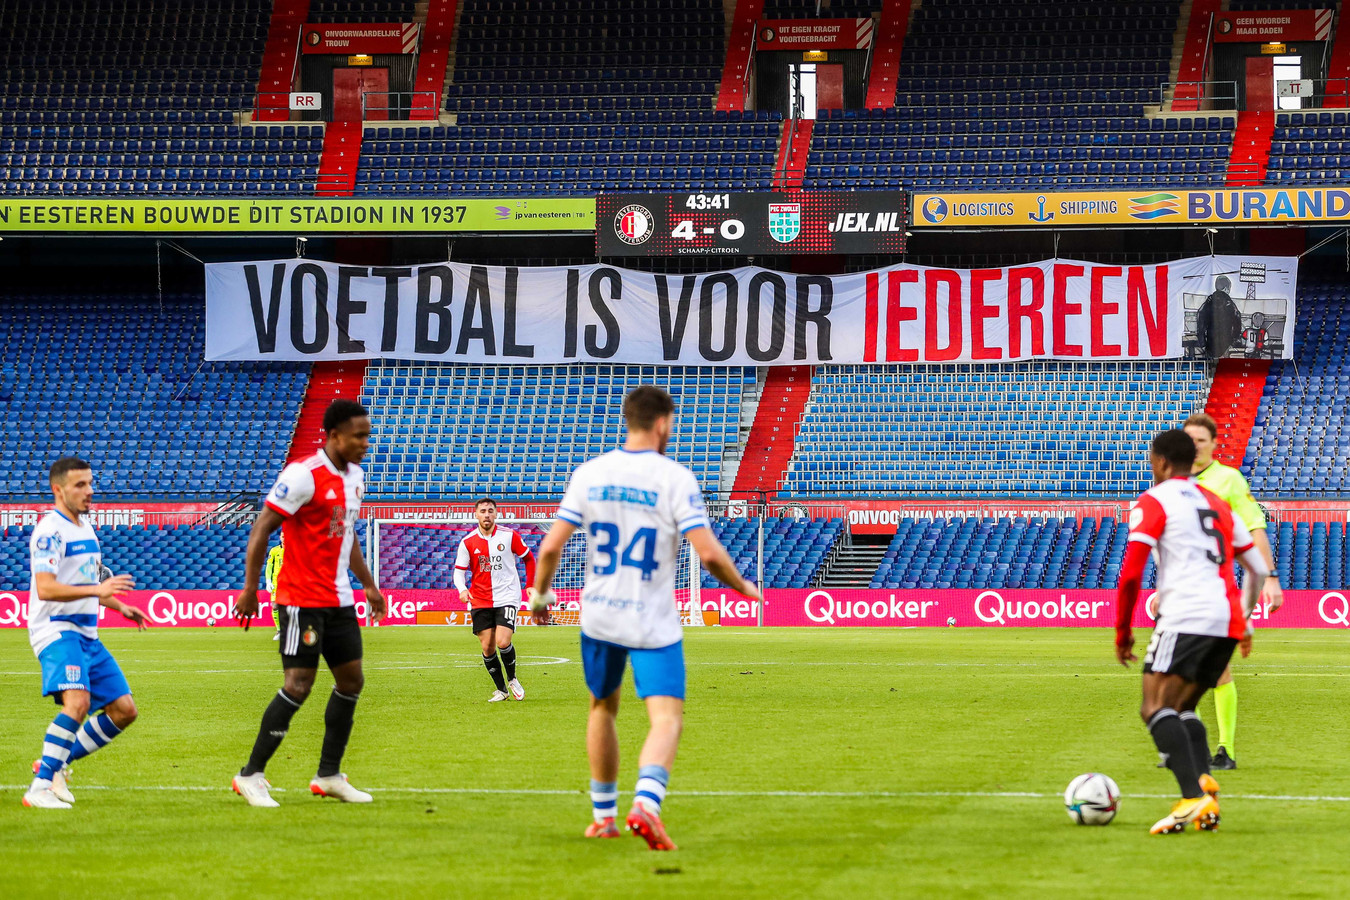 Feyenoord - PEC Zwolle werd afgelopen zondag vanwege de coronarestricties in een lege Kuip gespeeld, zoals alle stadions in Nederland voorlopig nog gesloten zullen blijven.